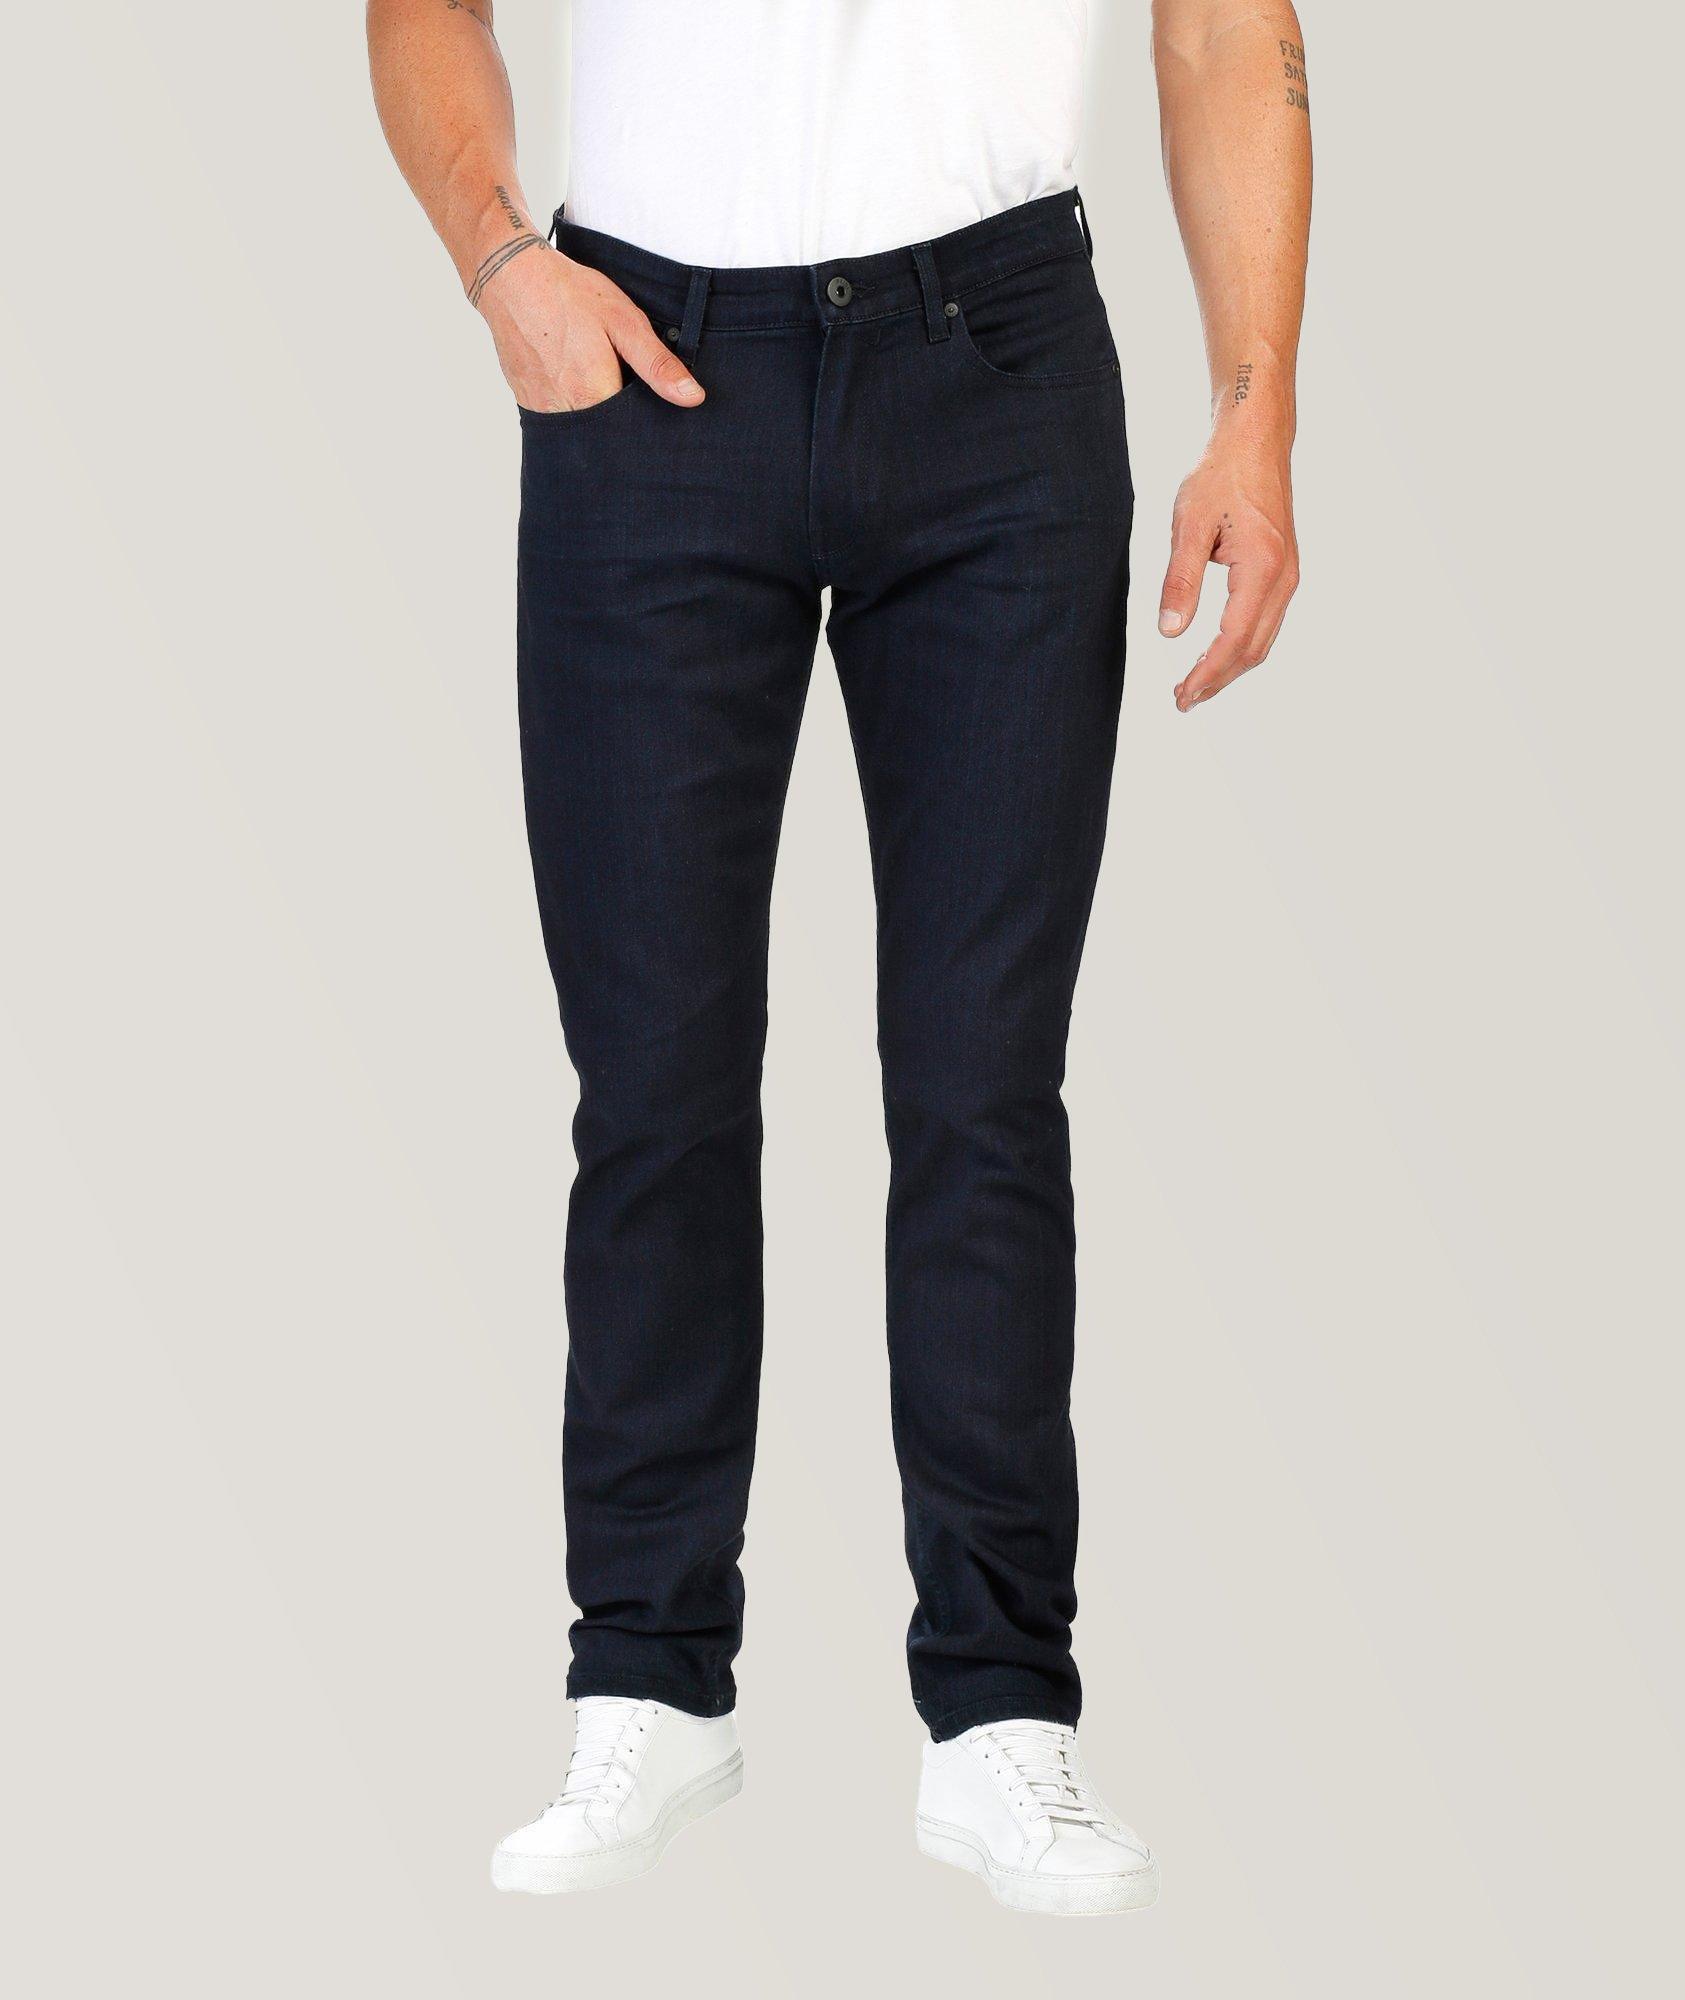 Federal Slim-Fit Transcend Jeans image 0